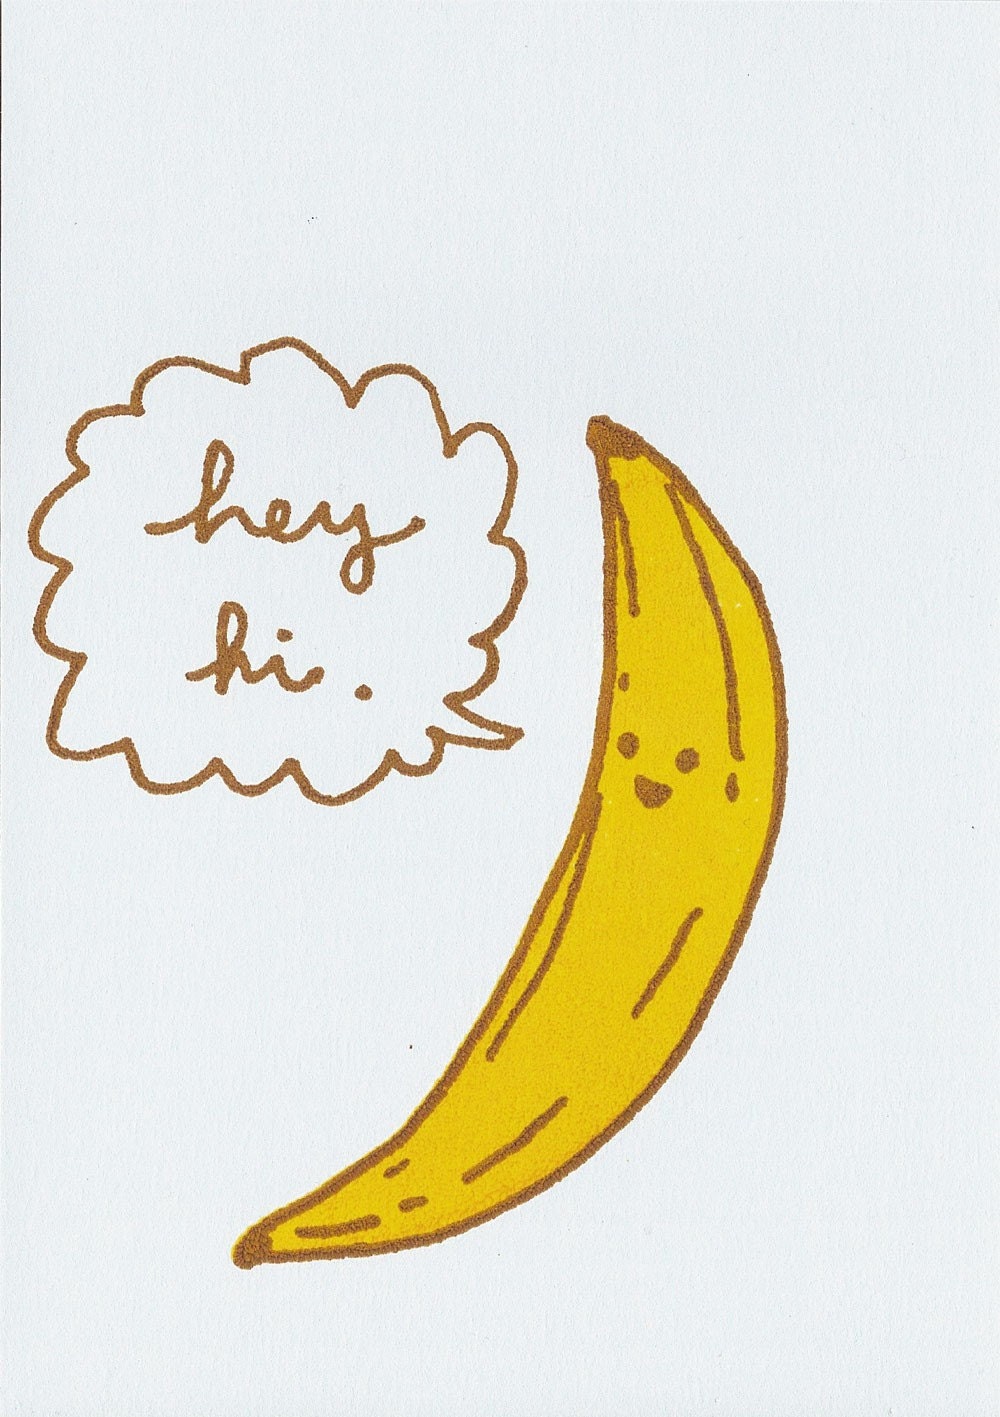 Drawn Banana